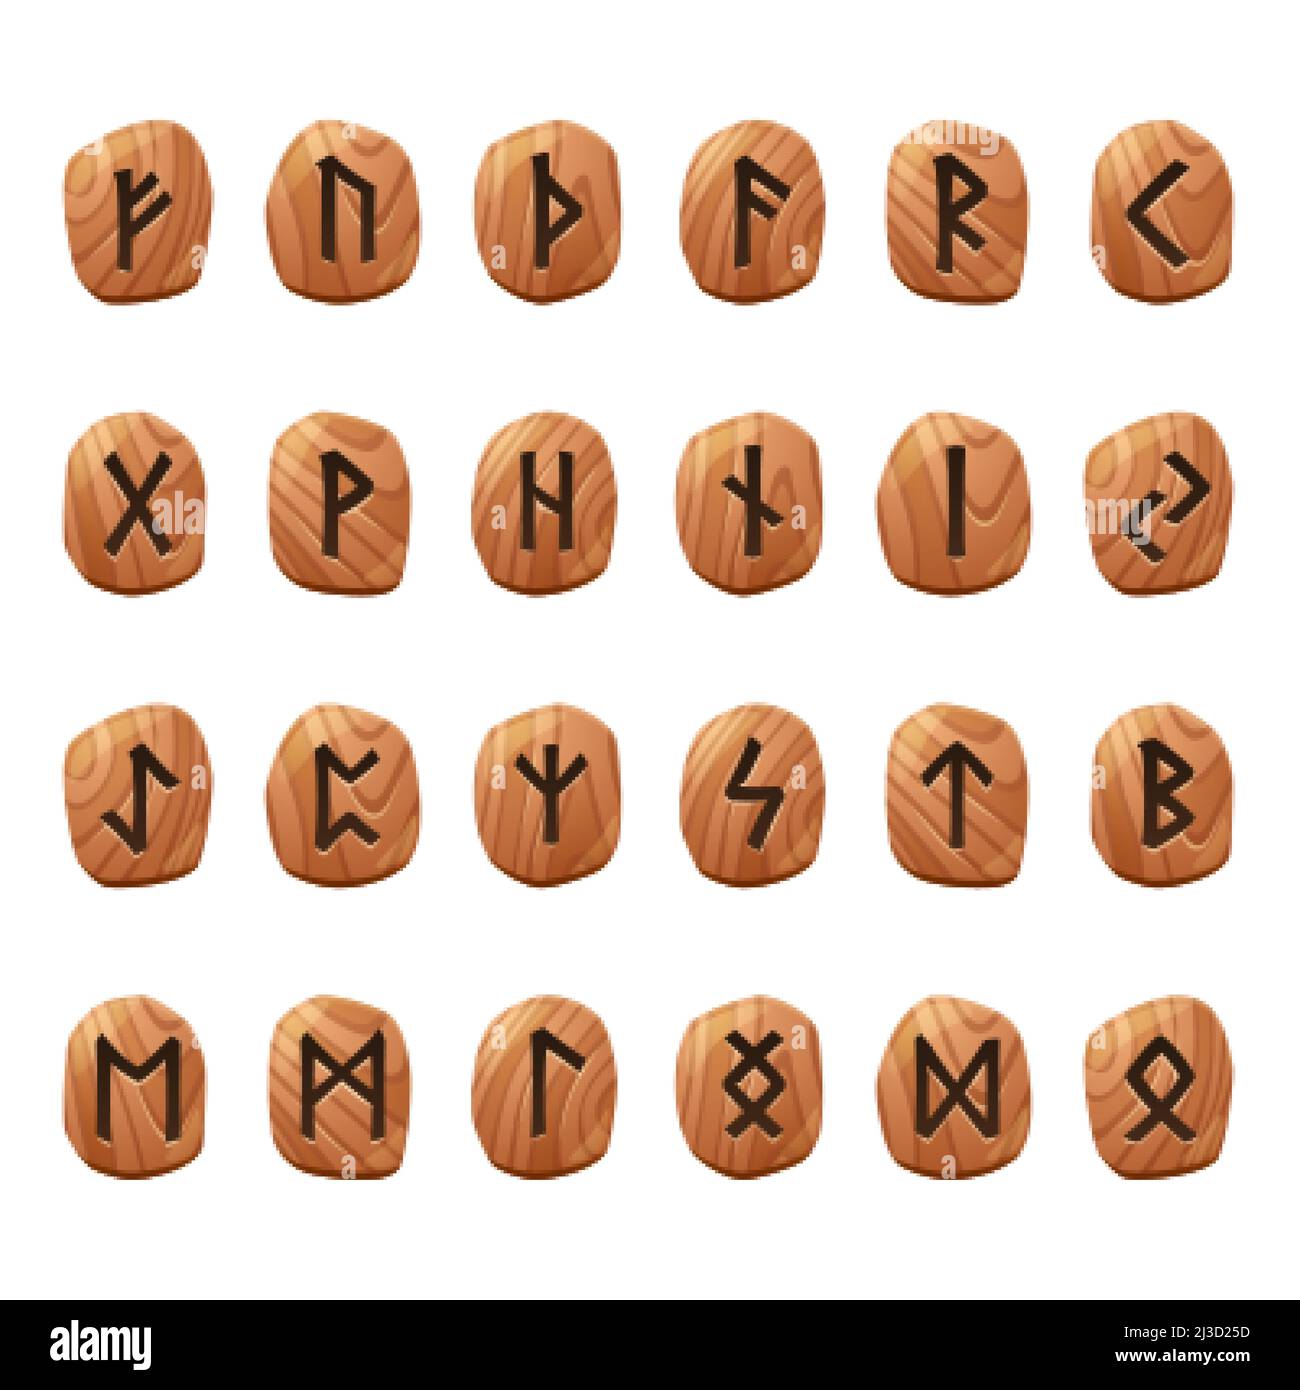 Jeu de runes de jeu, alphabet antique nordique, symboles viking celtic futumark gravés sur des pièces en bois.Signes occulte ésotériques, interface utilisateur mystique ou design gui ele Illustration de Vecteur